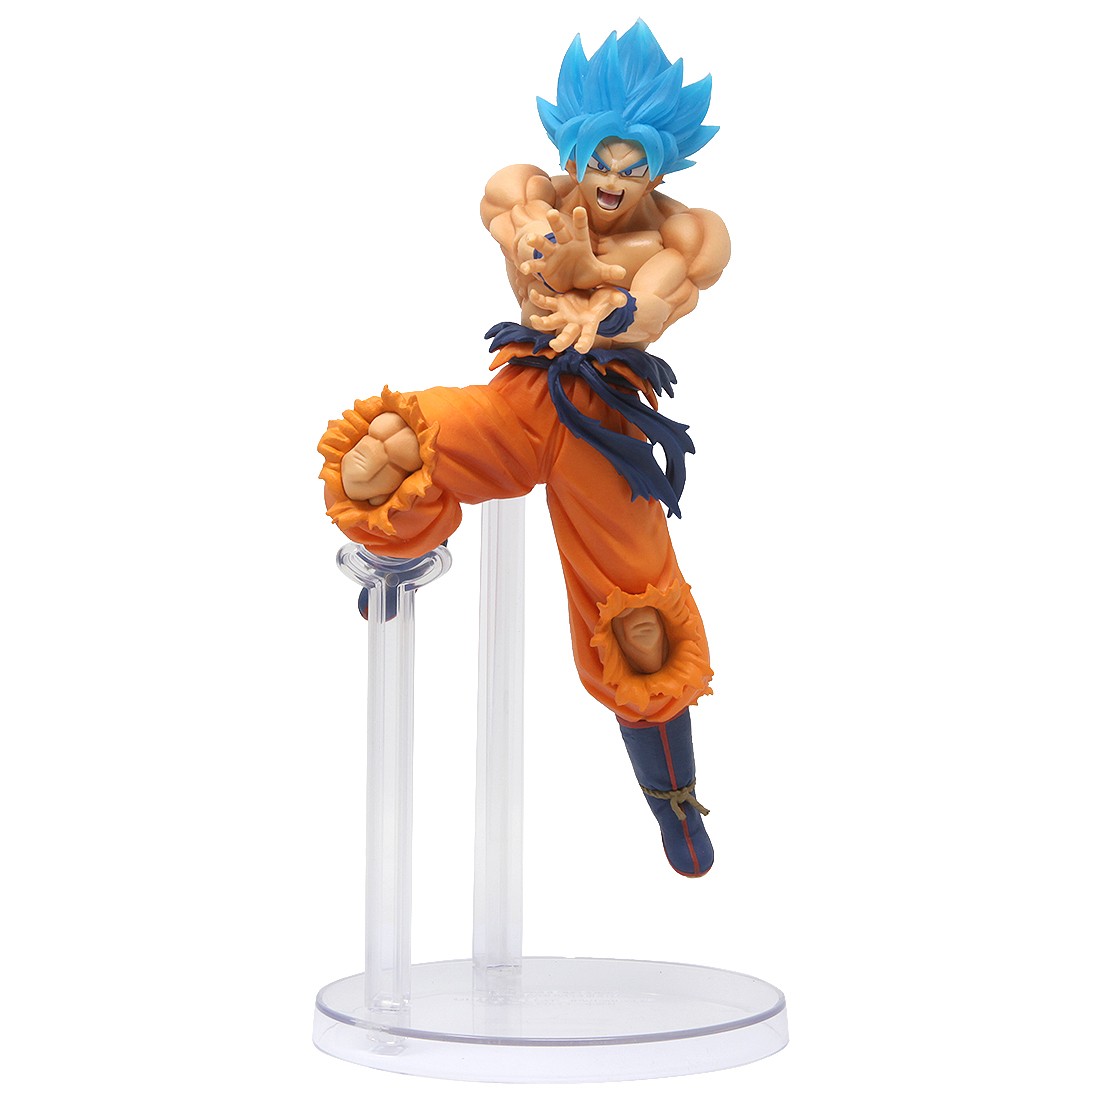 Bandai Ichiban Kuji Dragon Ball Super Saiyan God SS Son Goku Figure (blue)